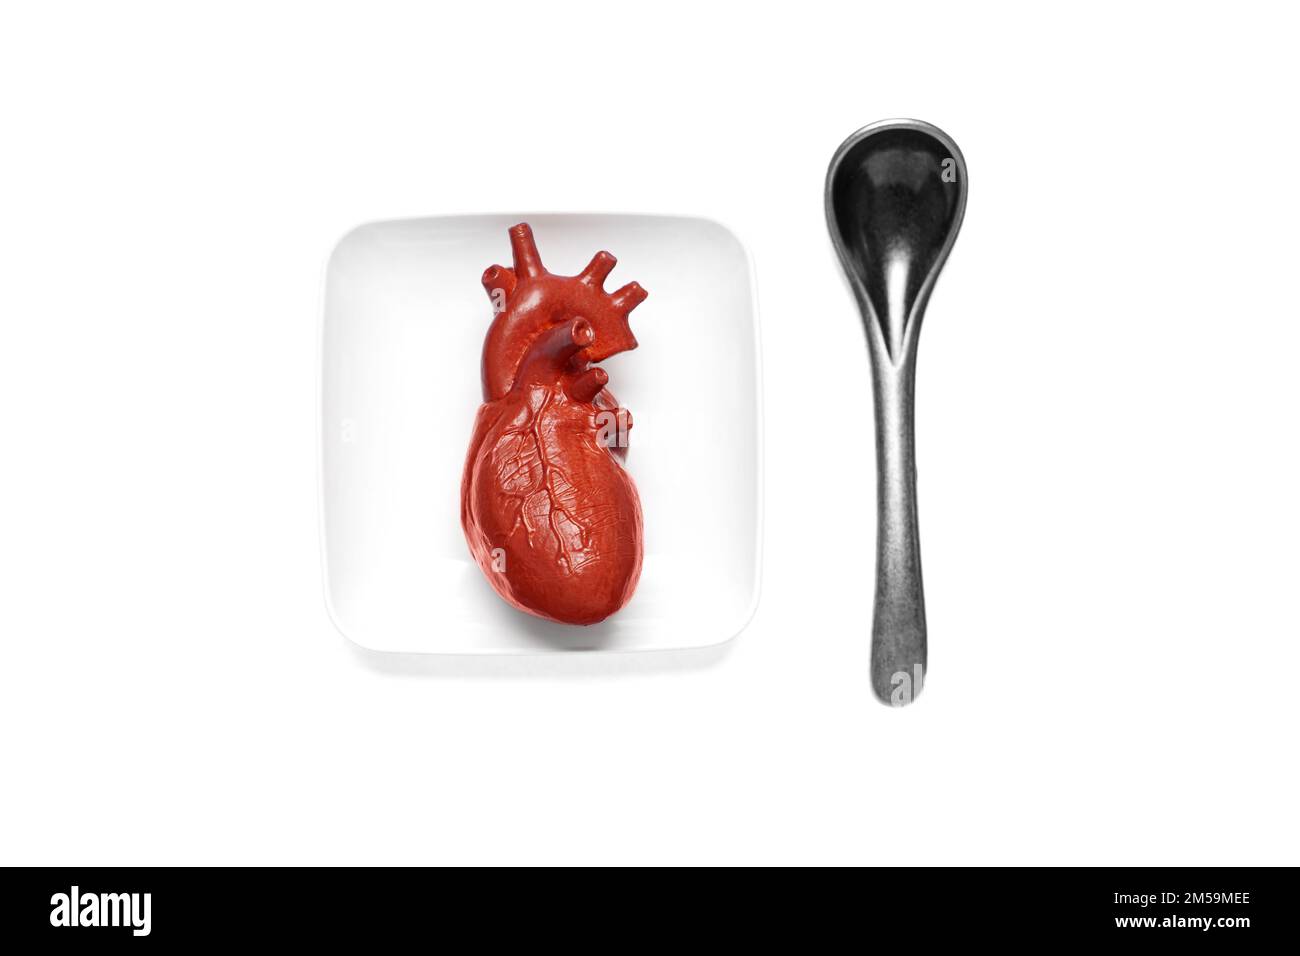 Copia anatomica in miniatura di un cuore umano su una piccola piastra bianca e un piccolo cucchiaio in tonalità argento isolato su sfondo bianco. Concetto di cibo sano al cuore Foto Stock